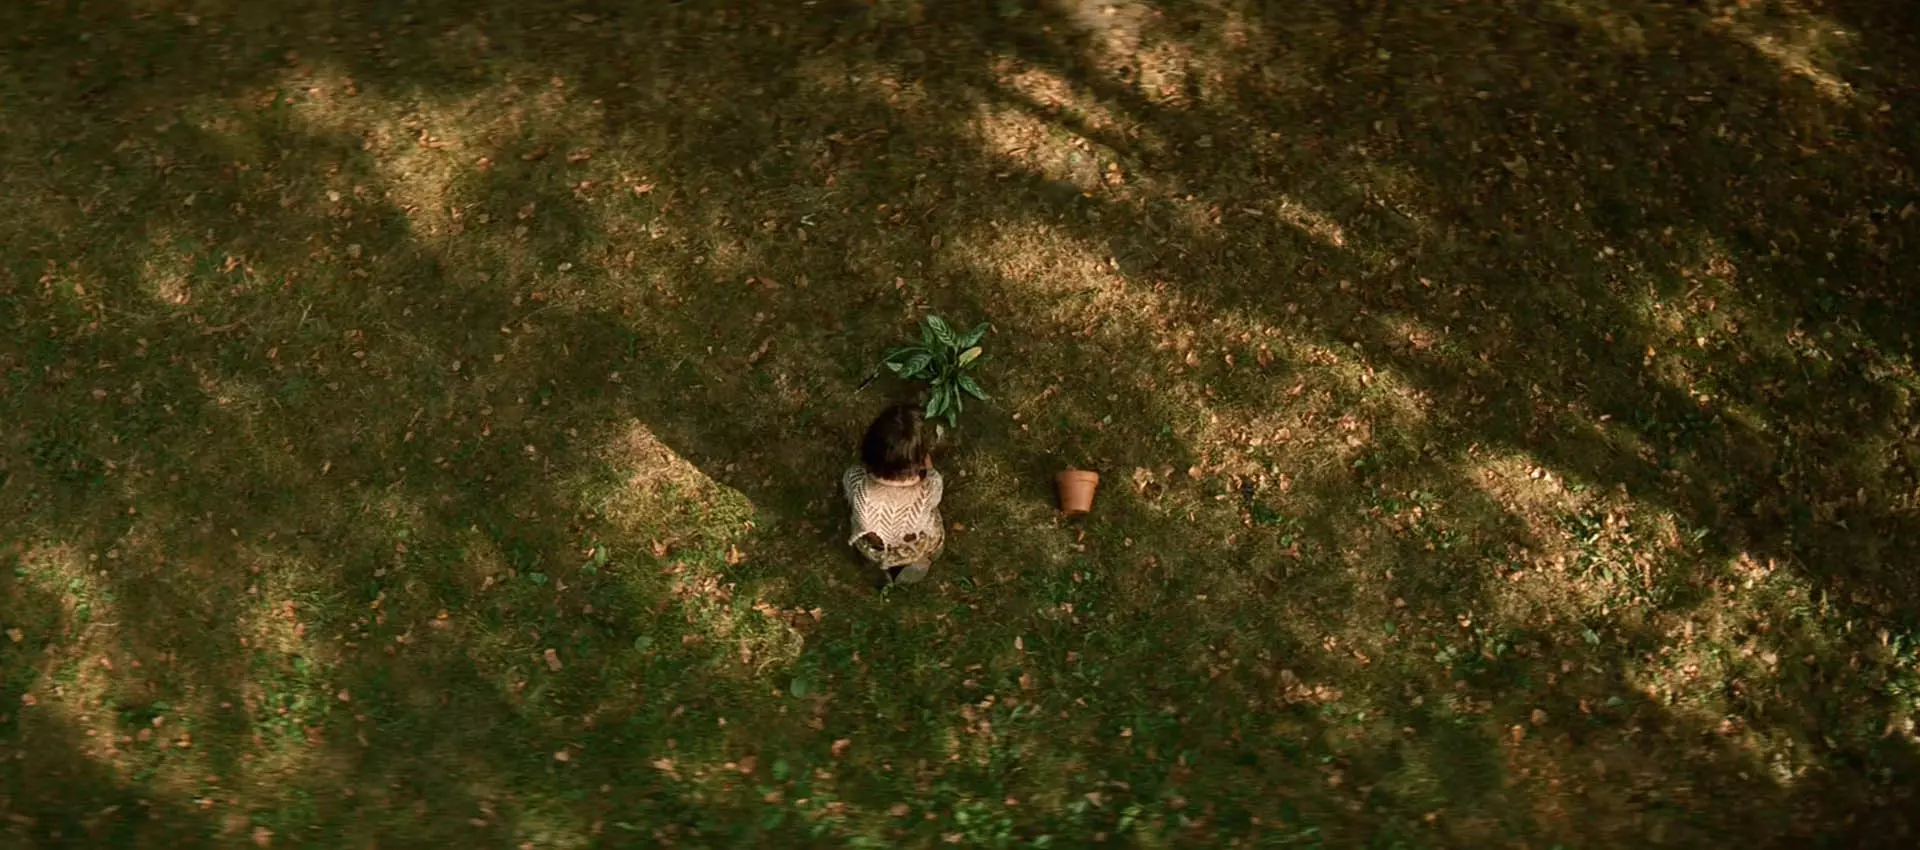 سکانس پایانی فیلم leon: the professional ماتیلدا درحال کاشتن گیاه لئون در زمین